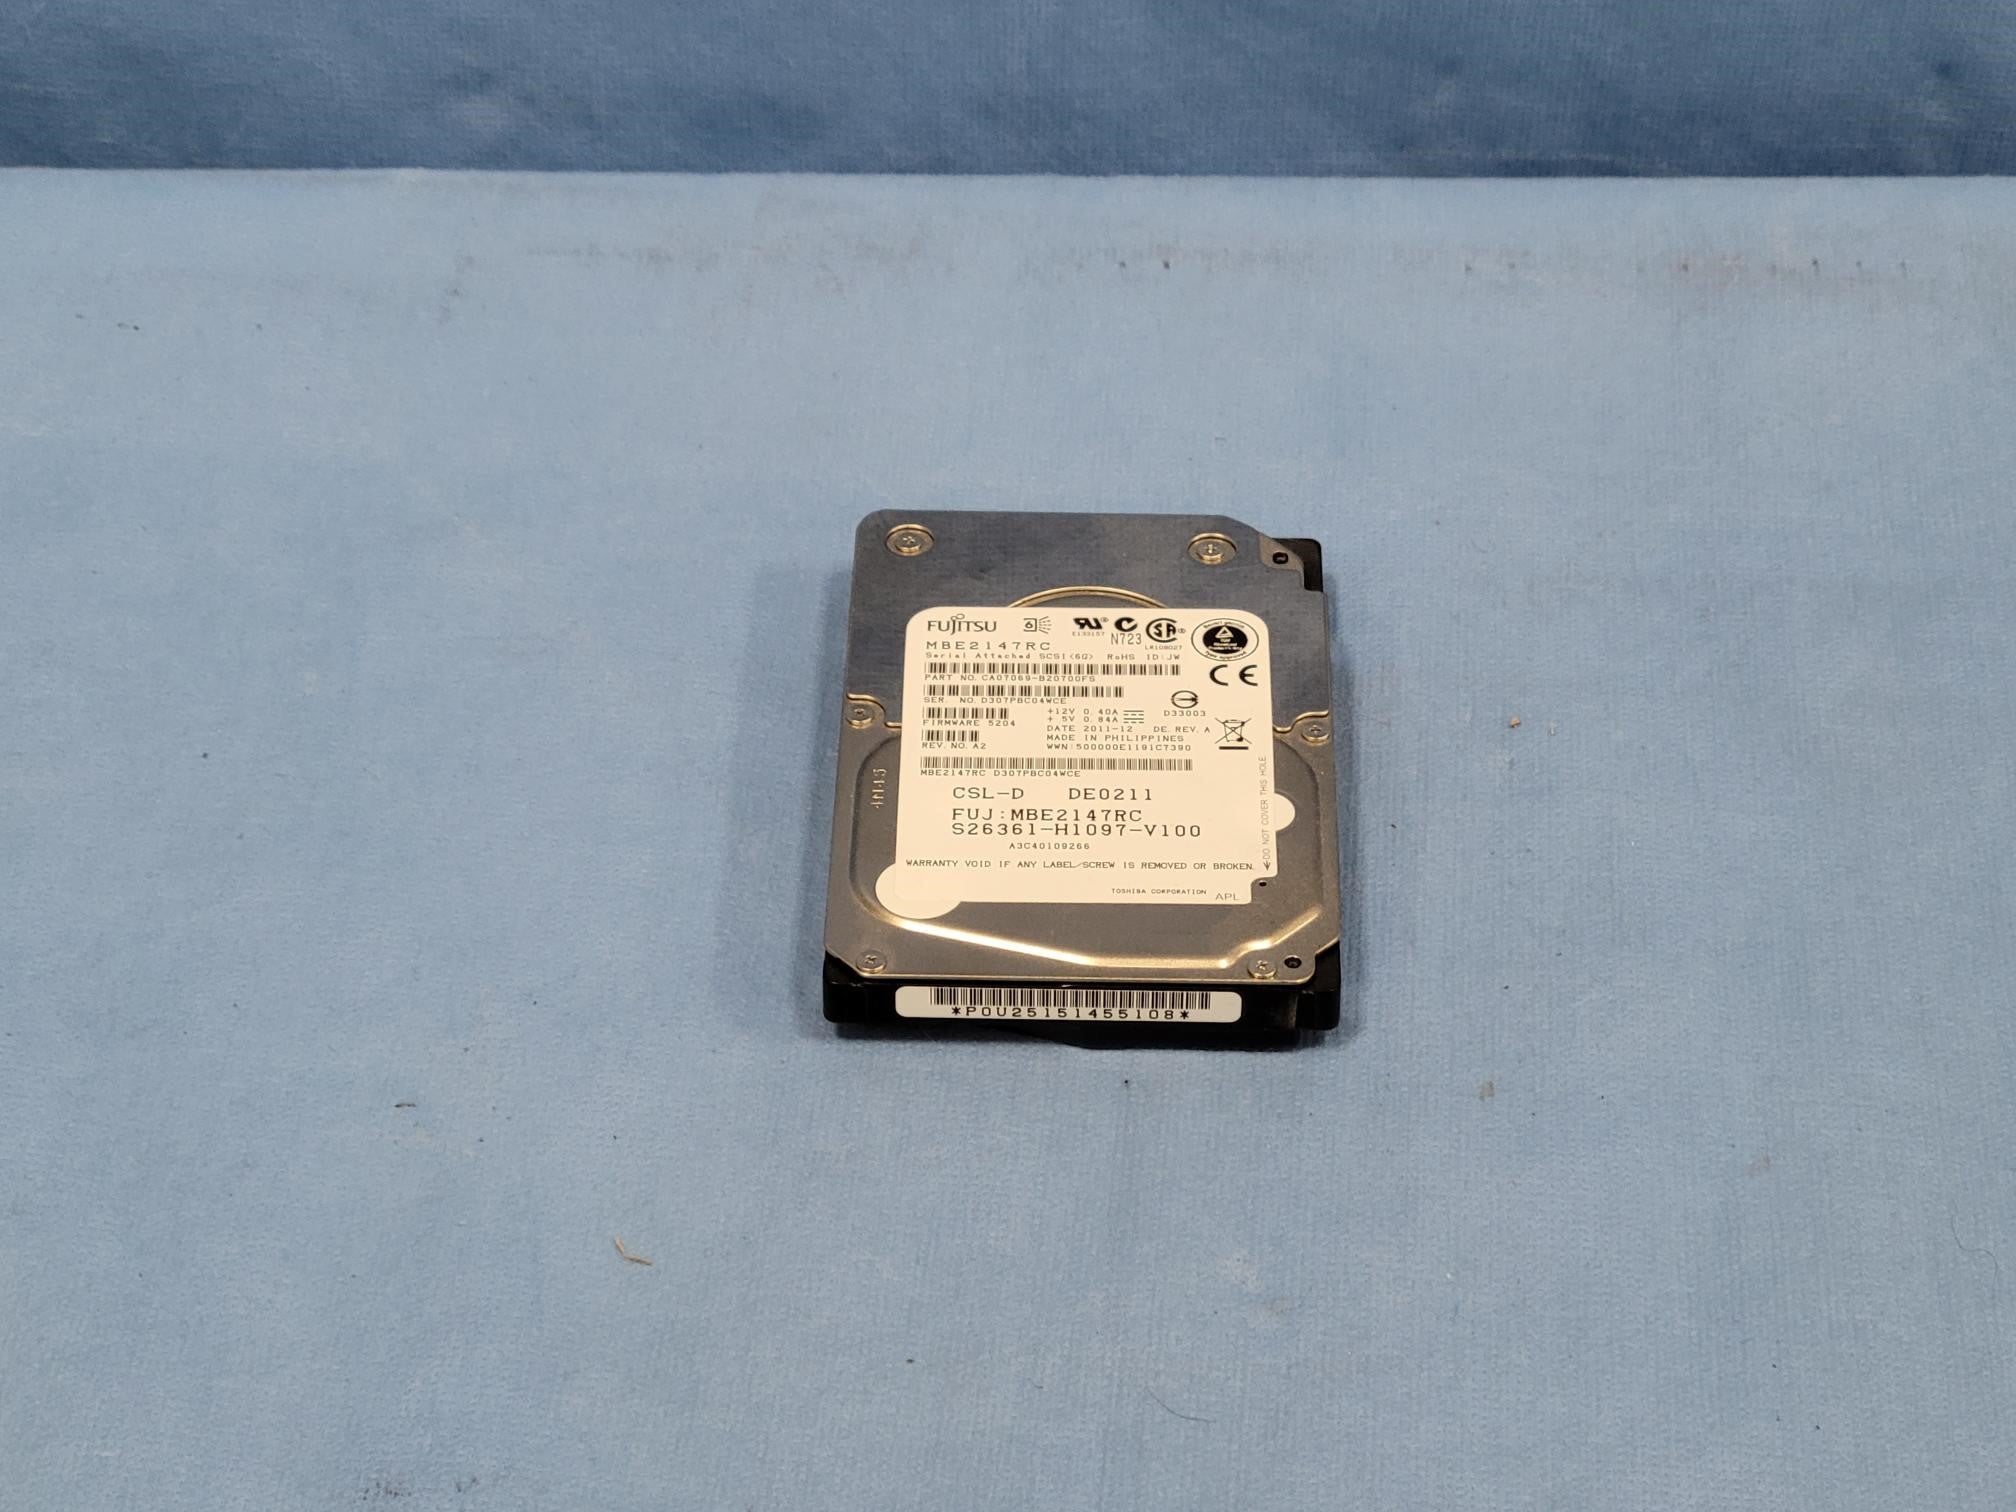 Fujitsu 146GB 15K 6Gb/s 2.5" SAS HDD S26361-H1097-V100 MBE2147RC